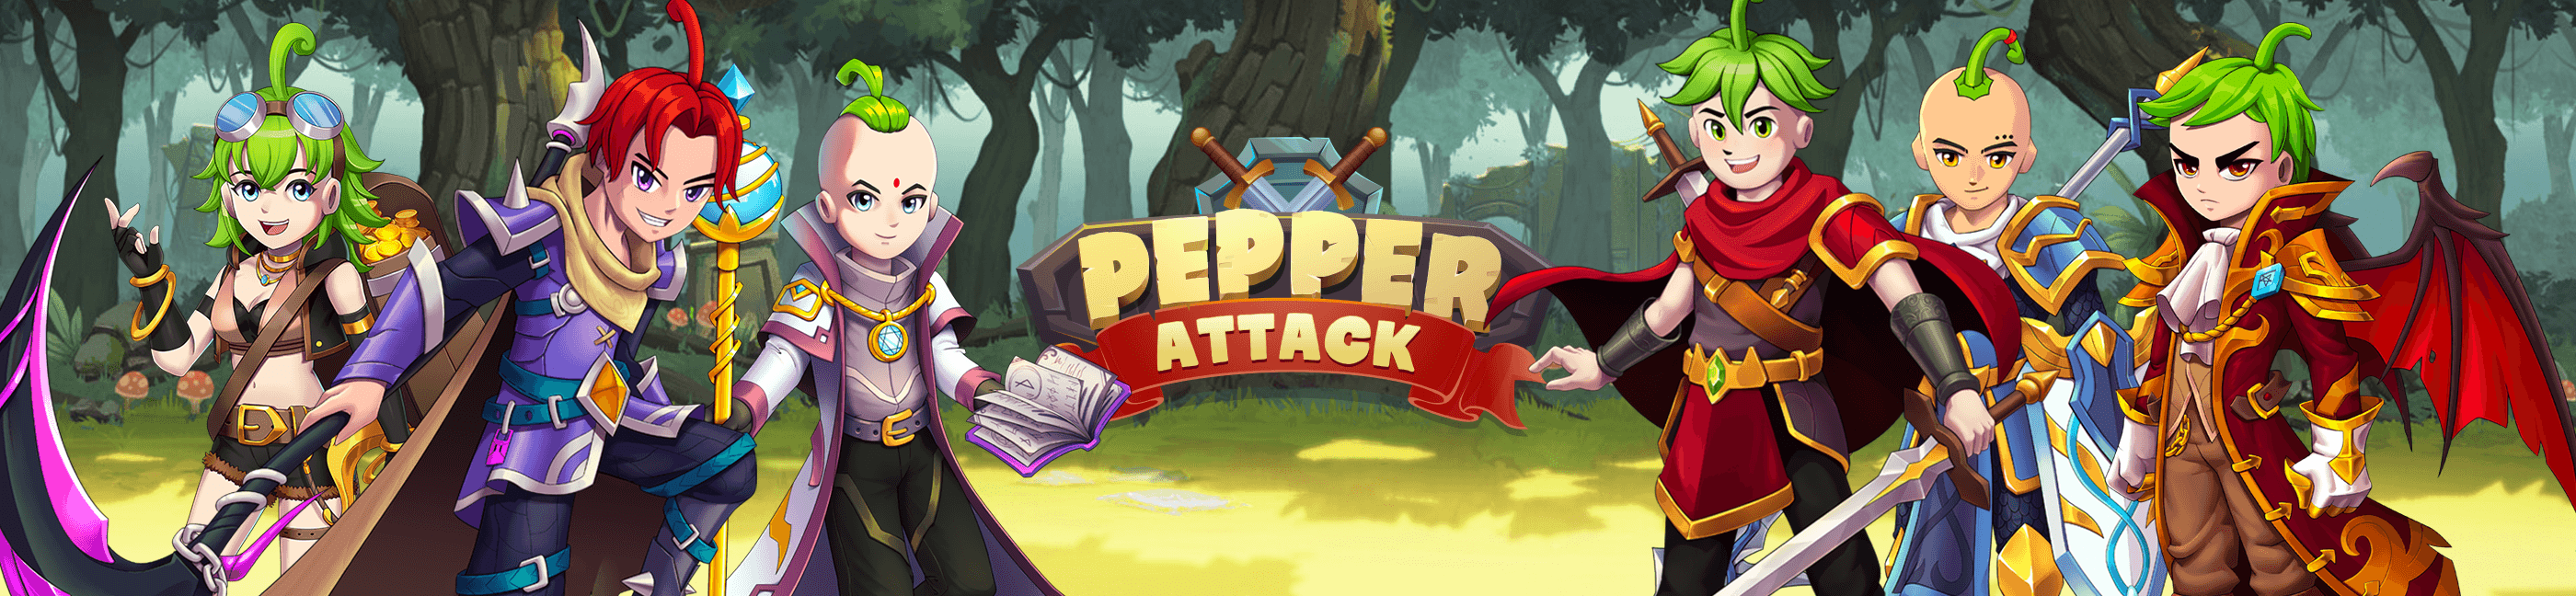 Pepper Attack